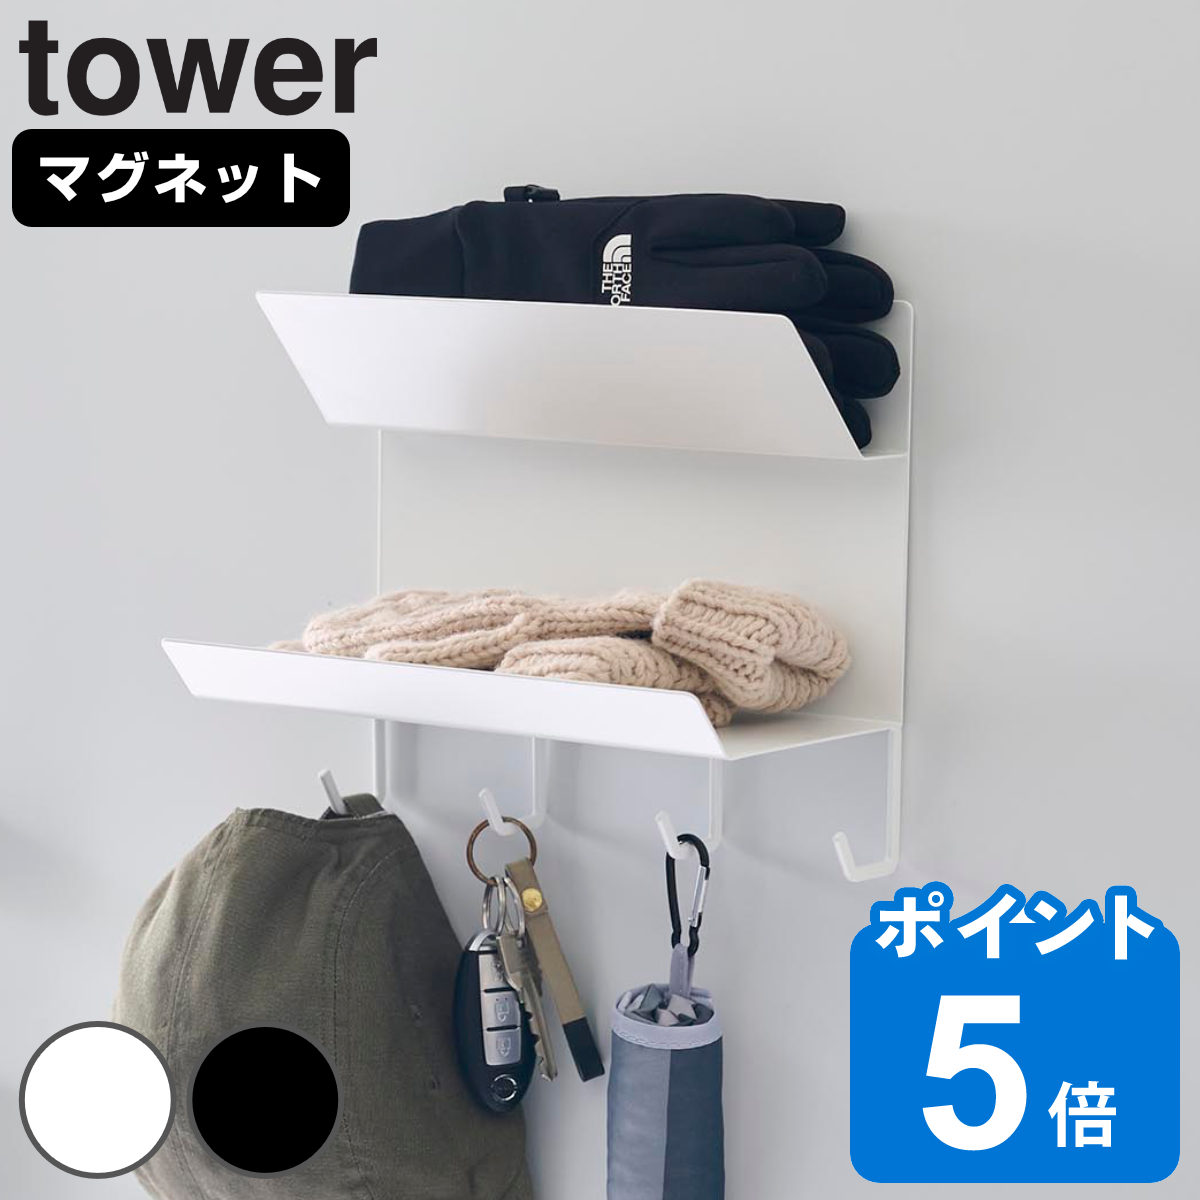 山崎実業 tower フック付きマグネット手袋ホルダー タワー